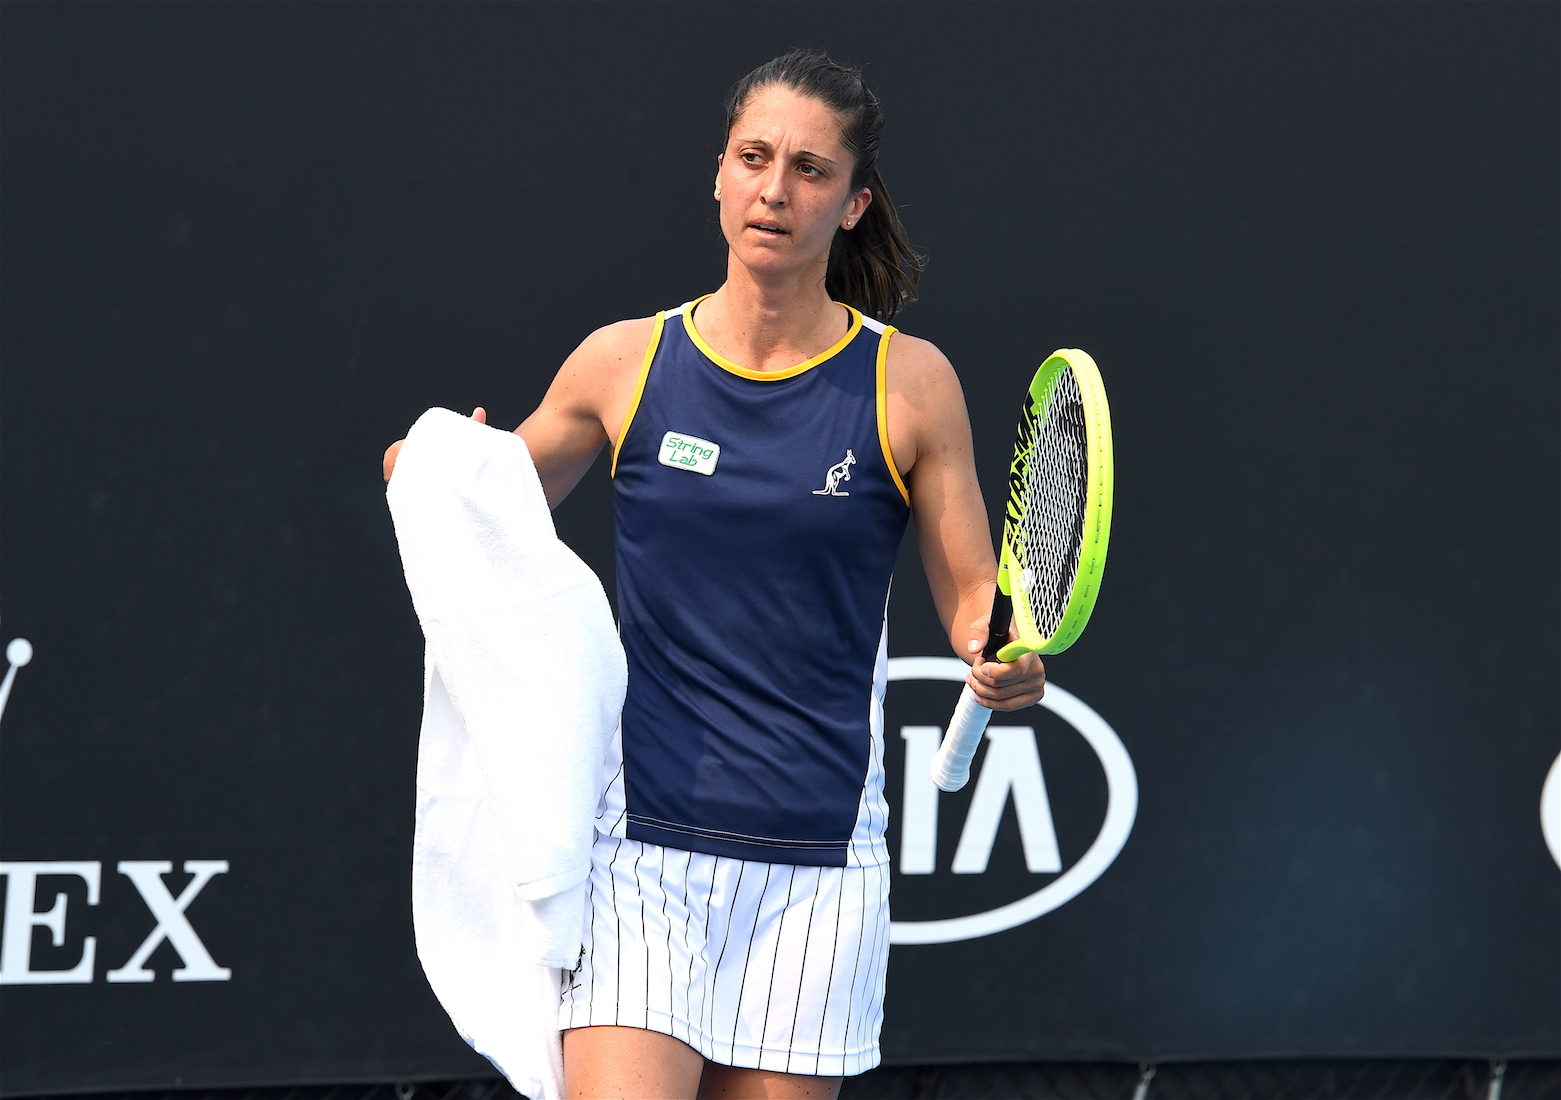 Australian Open 2020: Giulia Gatto-Monticone